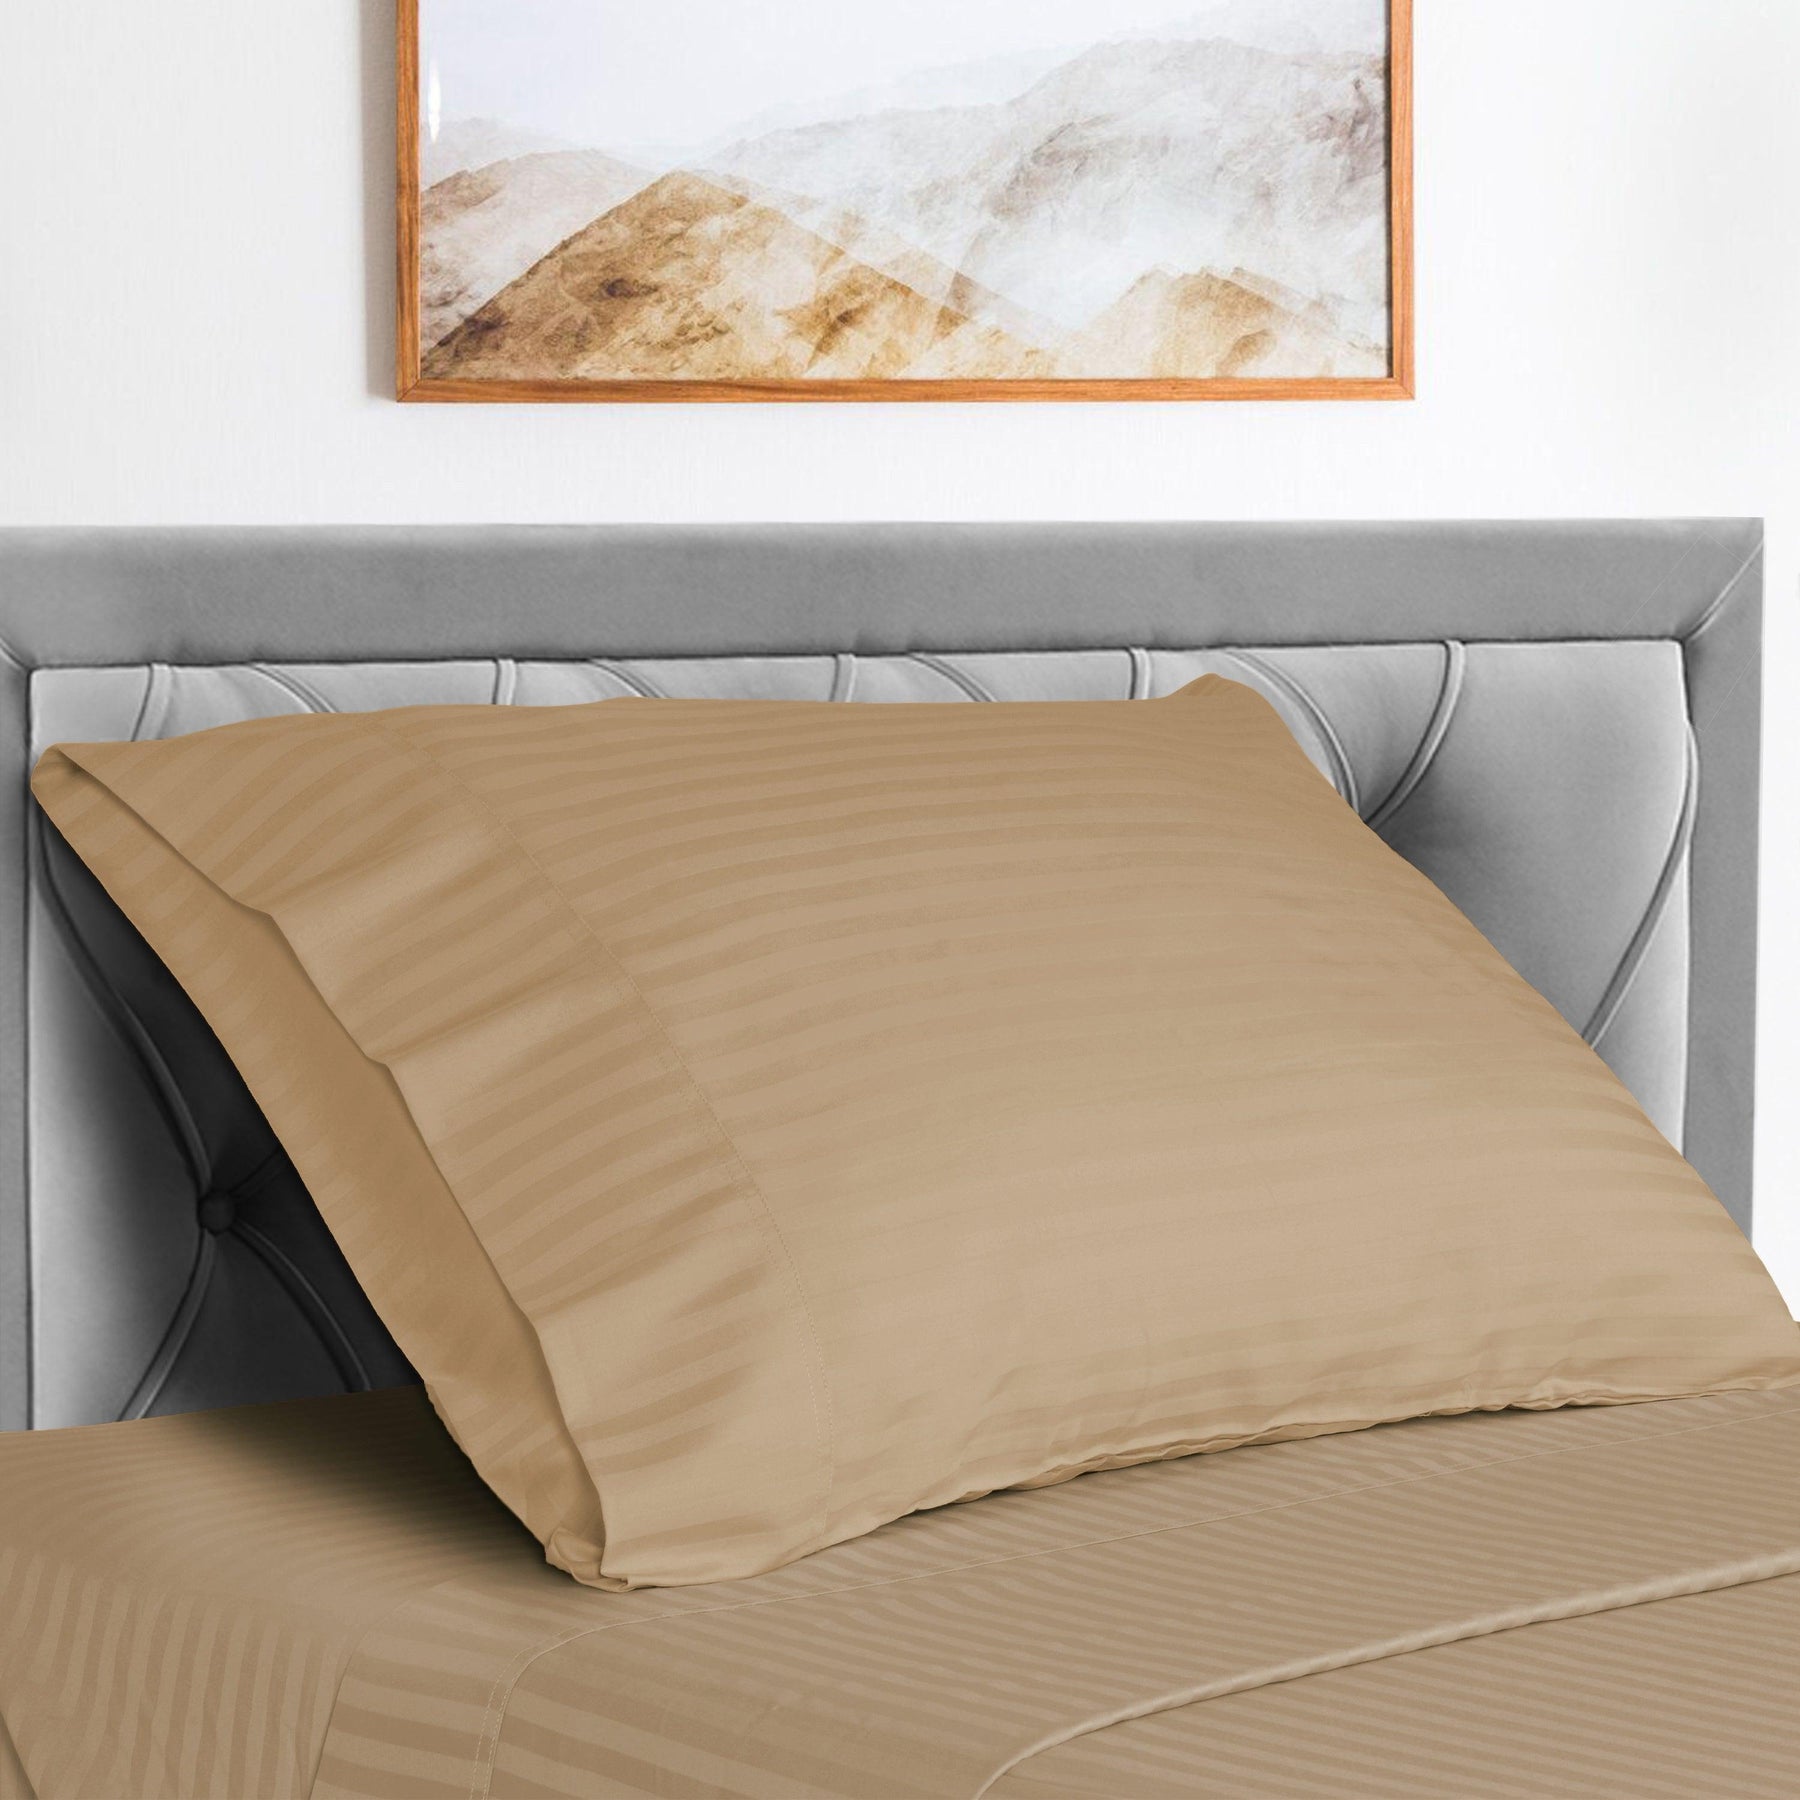  Superior Microfiber Wrinkle Resistant and Breathable Stripe Deep Pocket Bed Sheet Set - Beige